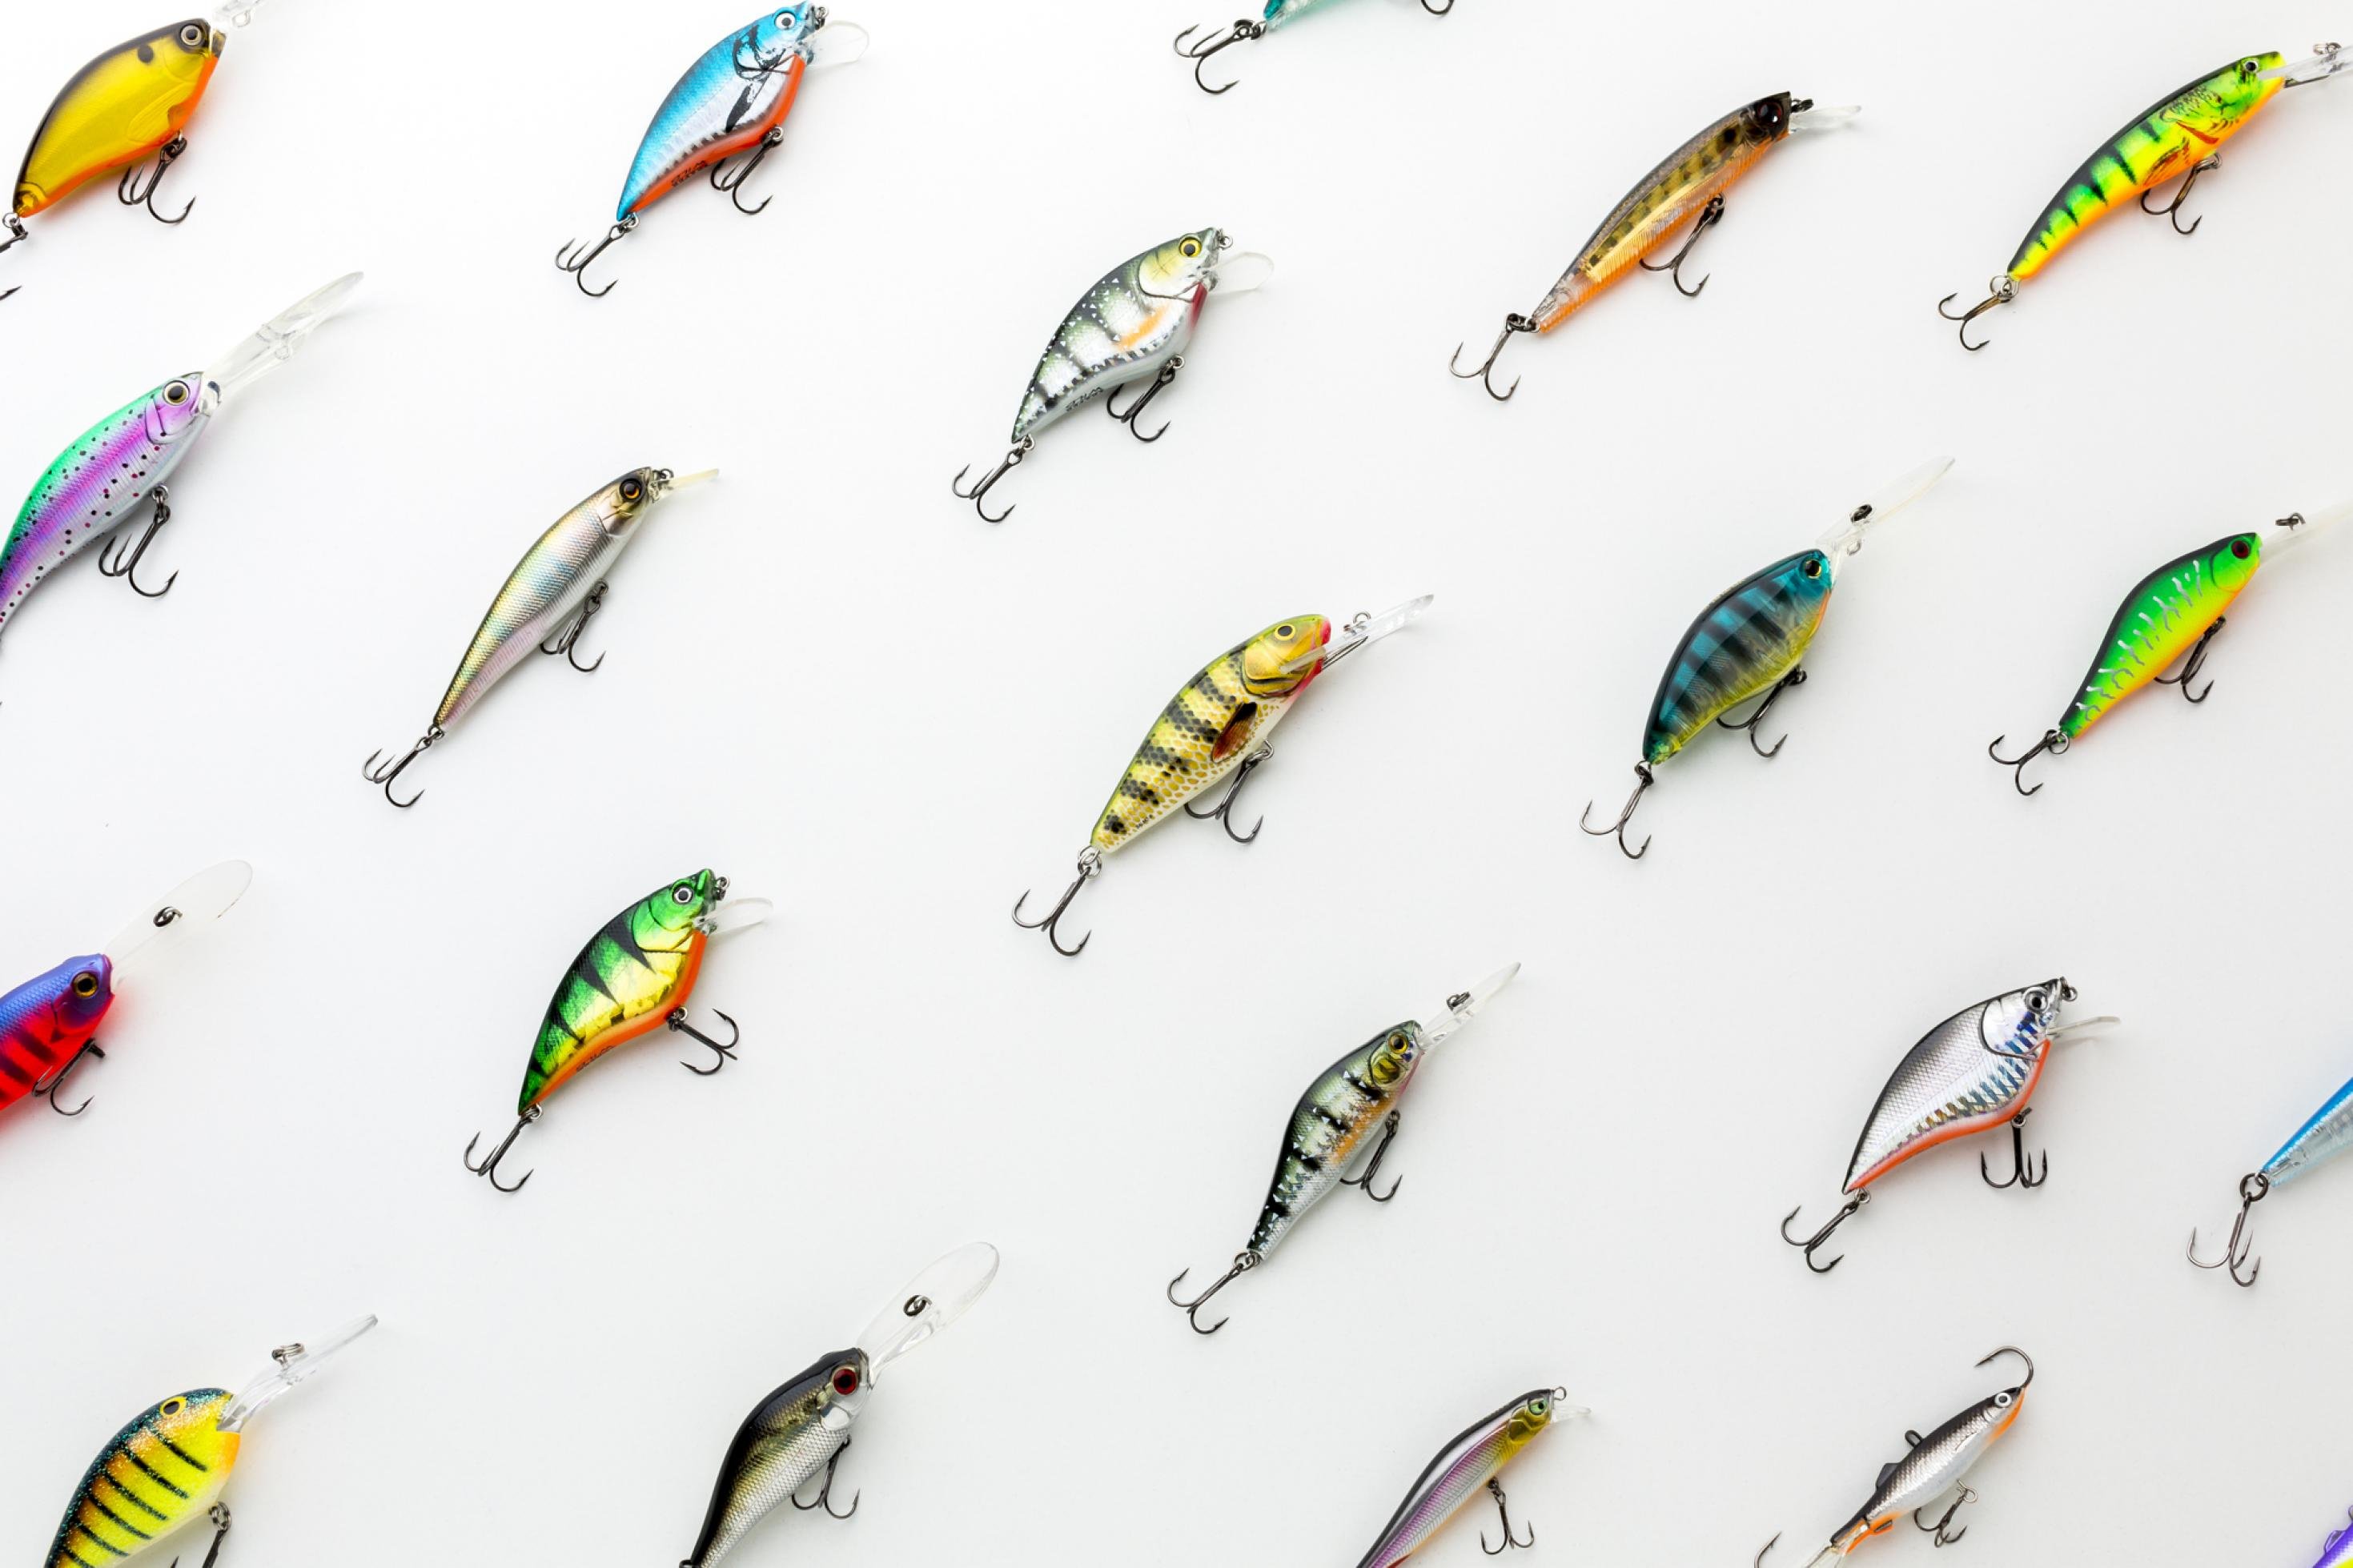 Das Bild zeigt ordentlich angeordnete Fischköder – es sind selbst farbenfrohe kleine Fischlein mit Haken.